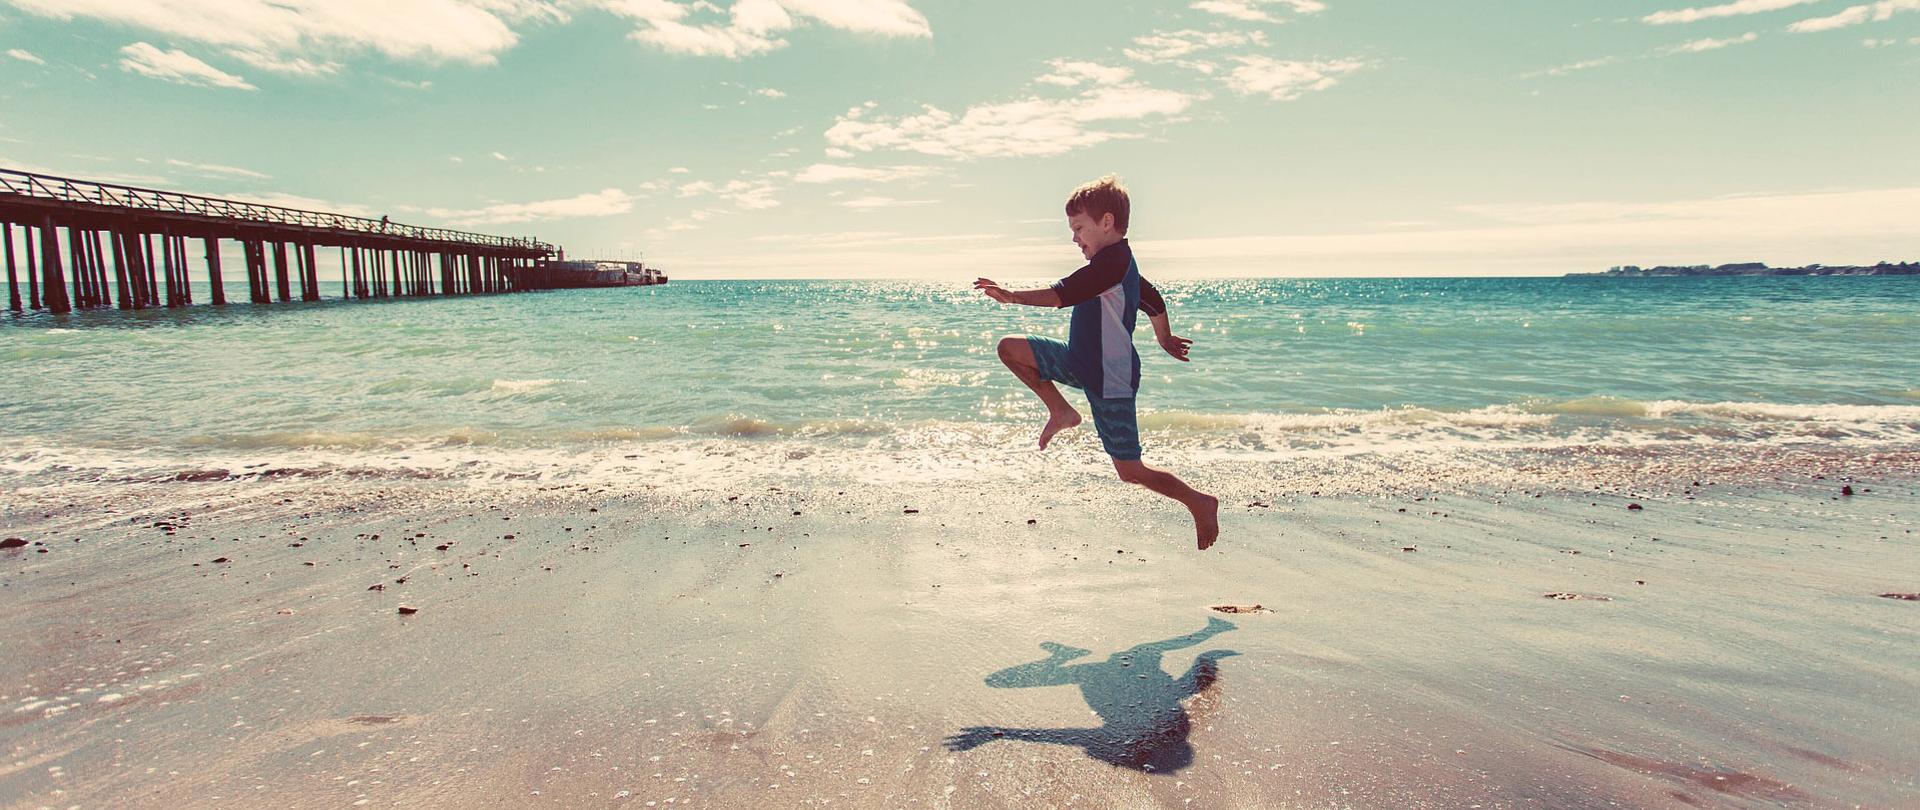 Chłopiec biegnący po plaży na tle morza. Po lewej molo biegnące w głąb morza z zacumowanymi na końcu statkami.